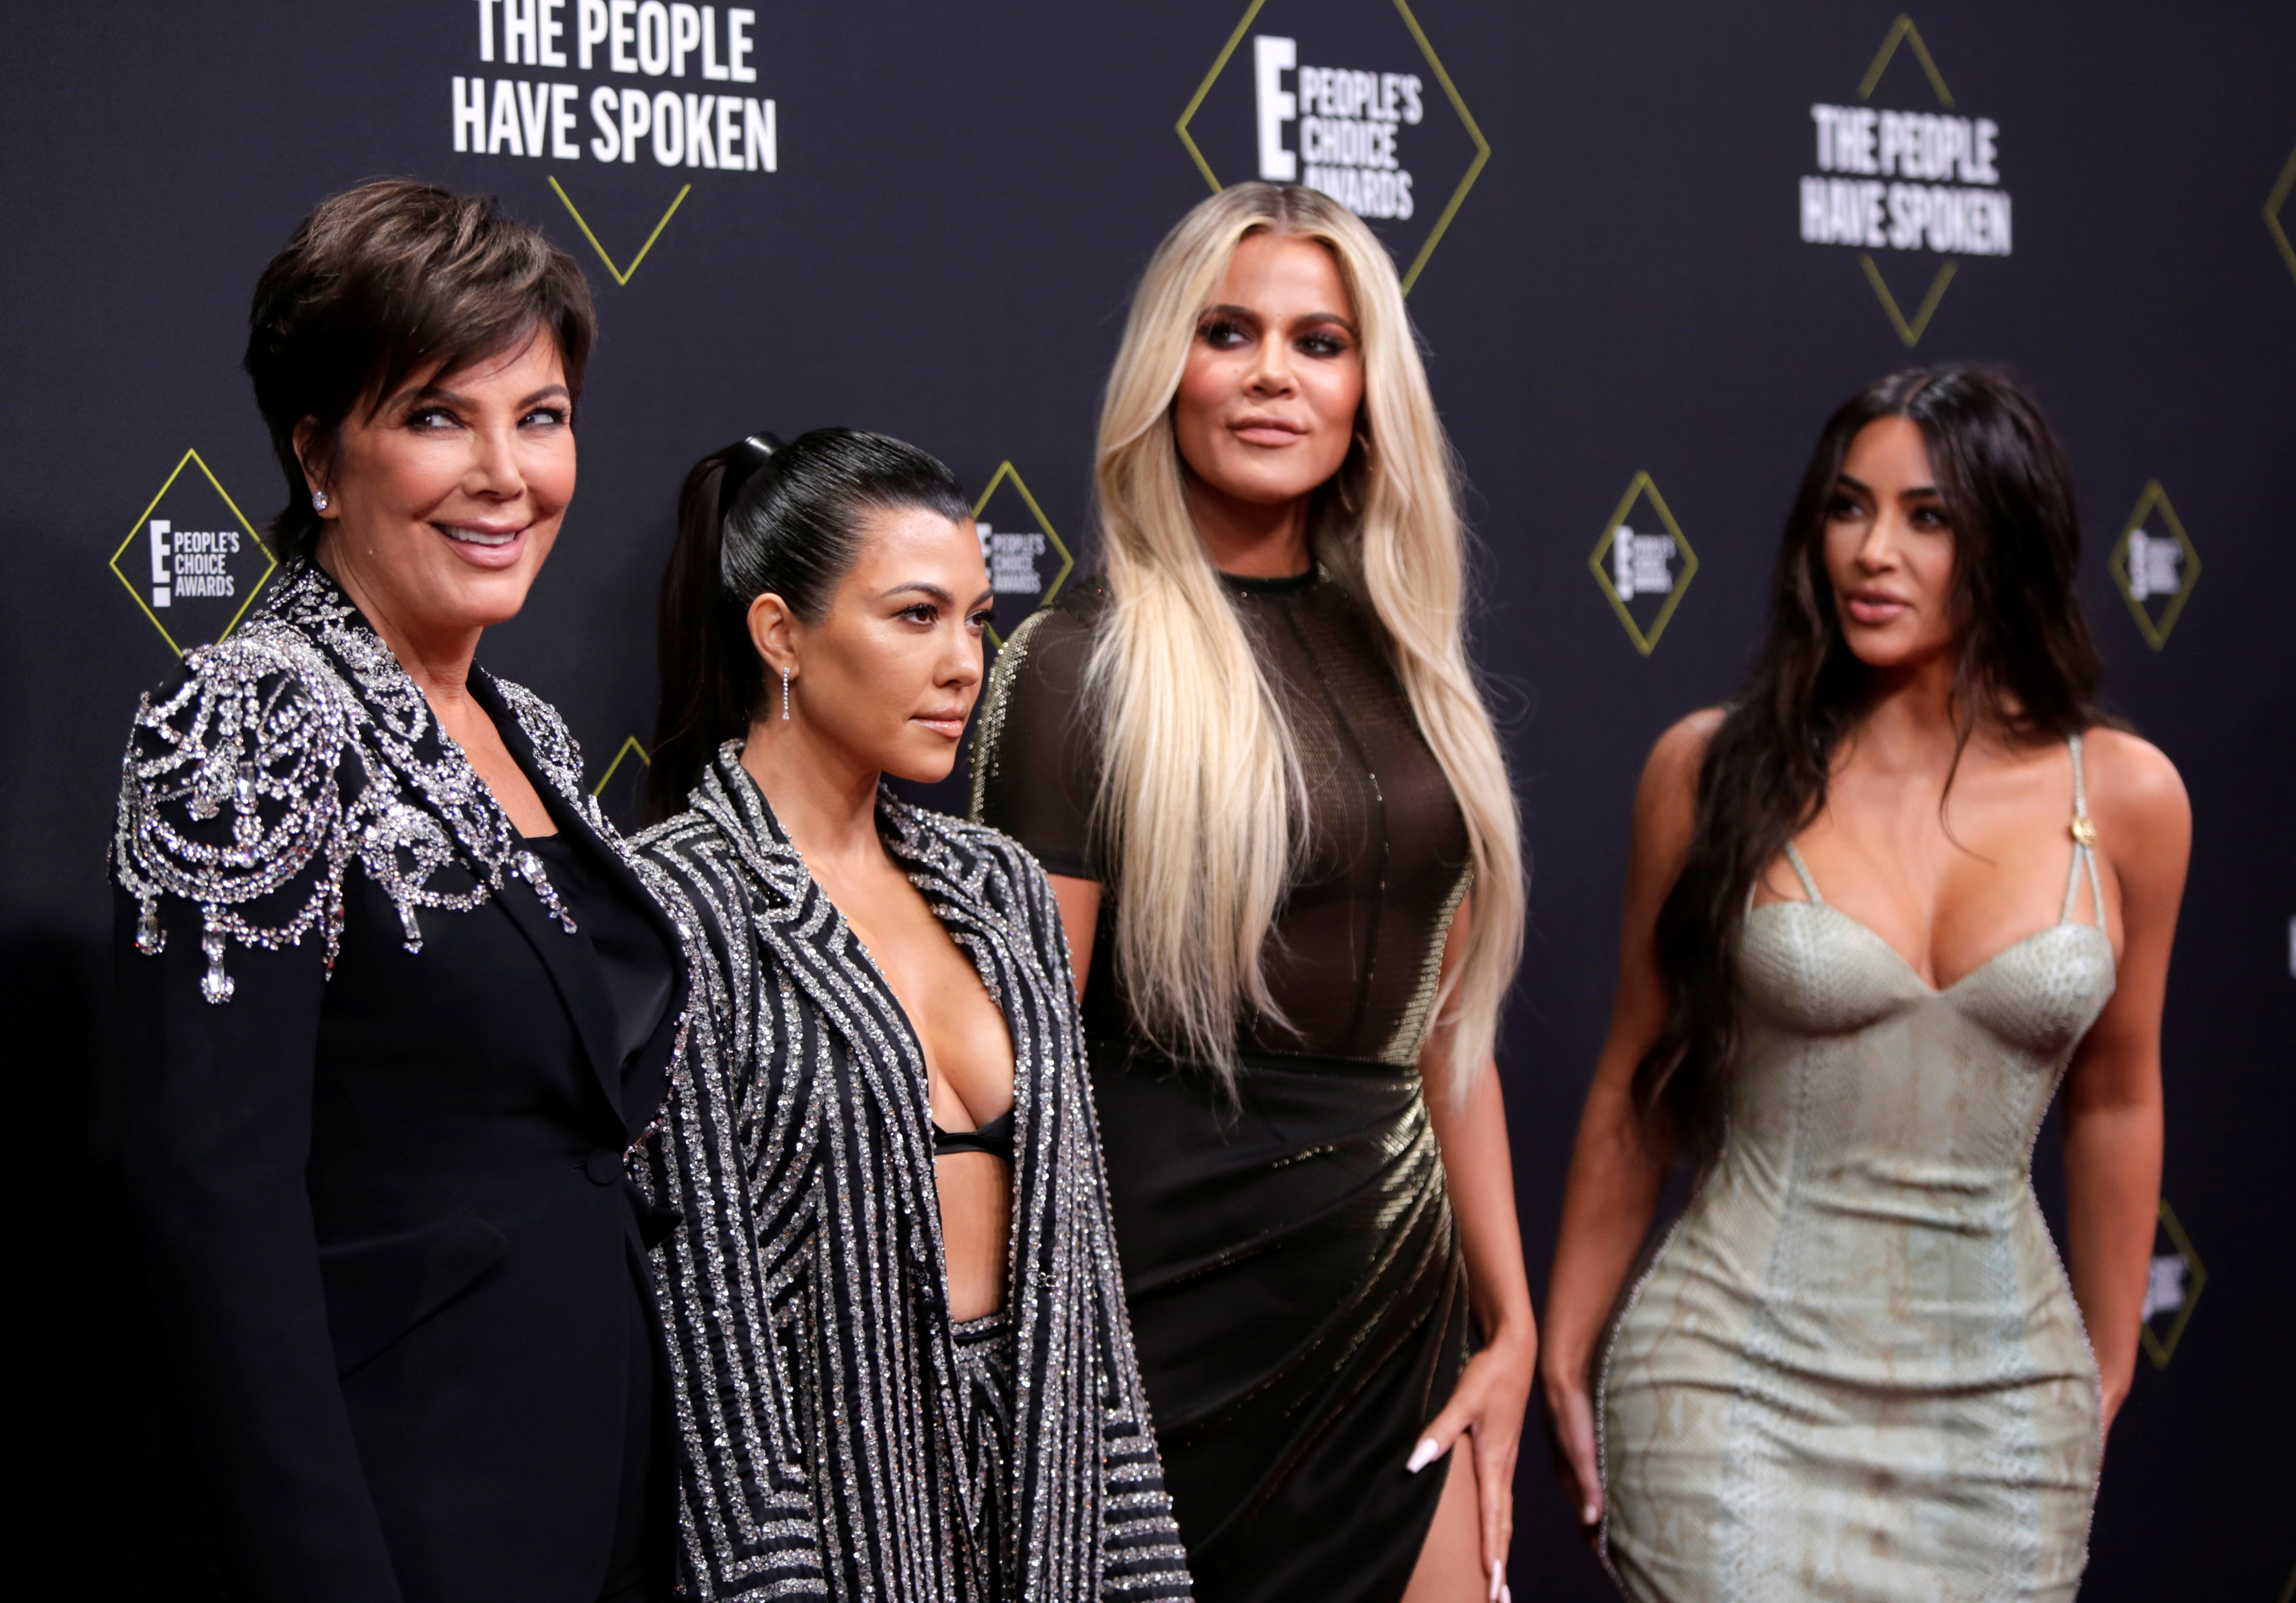 Kris Jenner, Kourtney Kardashian, Khloe Kardashian y Kim Kardashian durante una gala, en una foto de archivo. Su manager, Angela Kukawski fue hallada muerta dentro de su automóvil y se sospecha que fue víctima de un femicidio cometido por su pareja (Reuters)